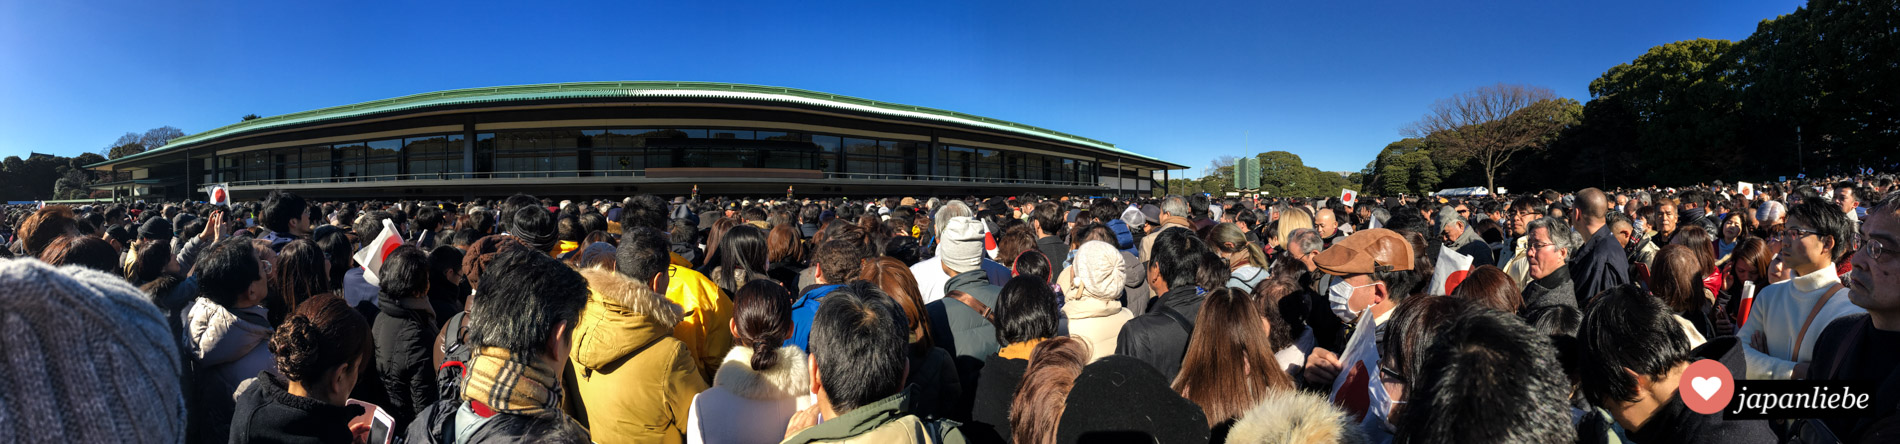 Die Menge wartet – mit Japanflaggen ausgestattet – auf die Neujahrsansprache des japanischen Kaisers.